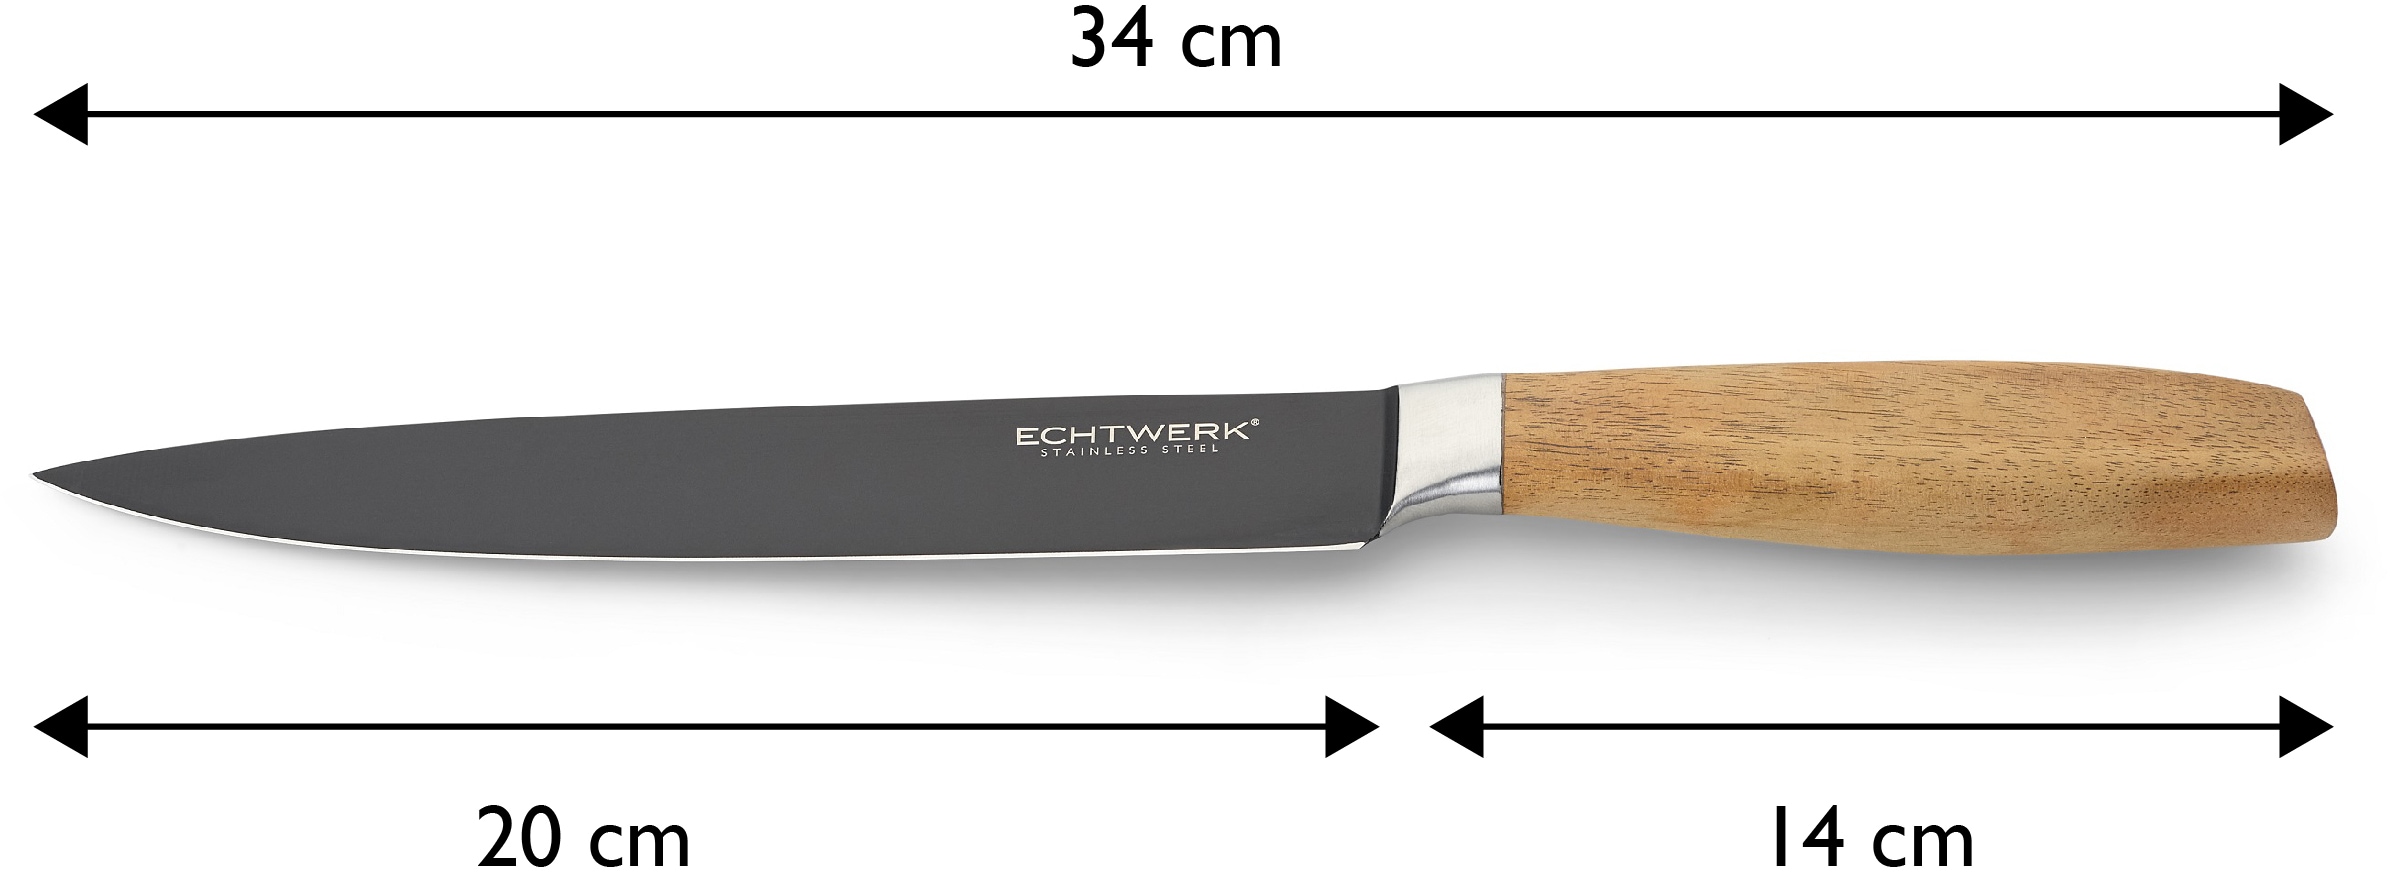 ECHTWERK Fleischmesser »Classic«, (1 tlg.), aus hochwertigem Stahl, Akazienholzgriff, Black-Edition, 20 cm